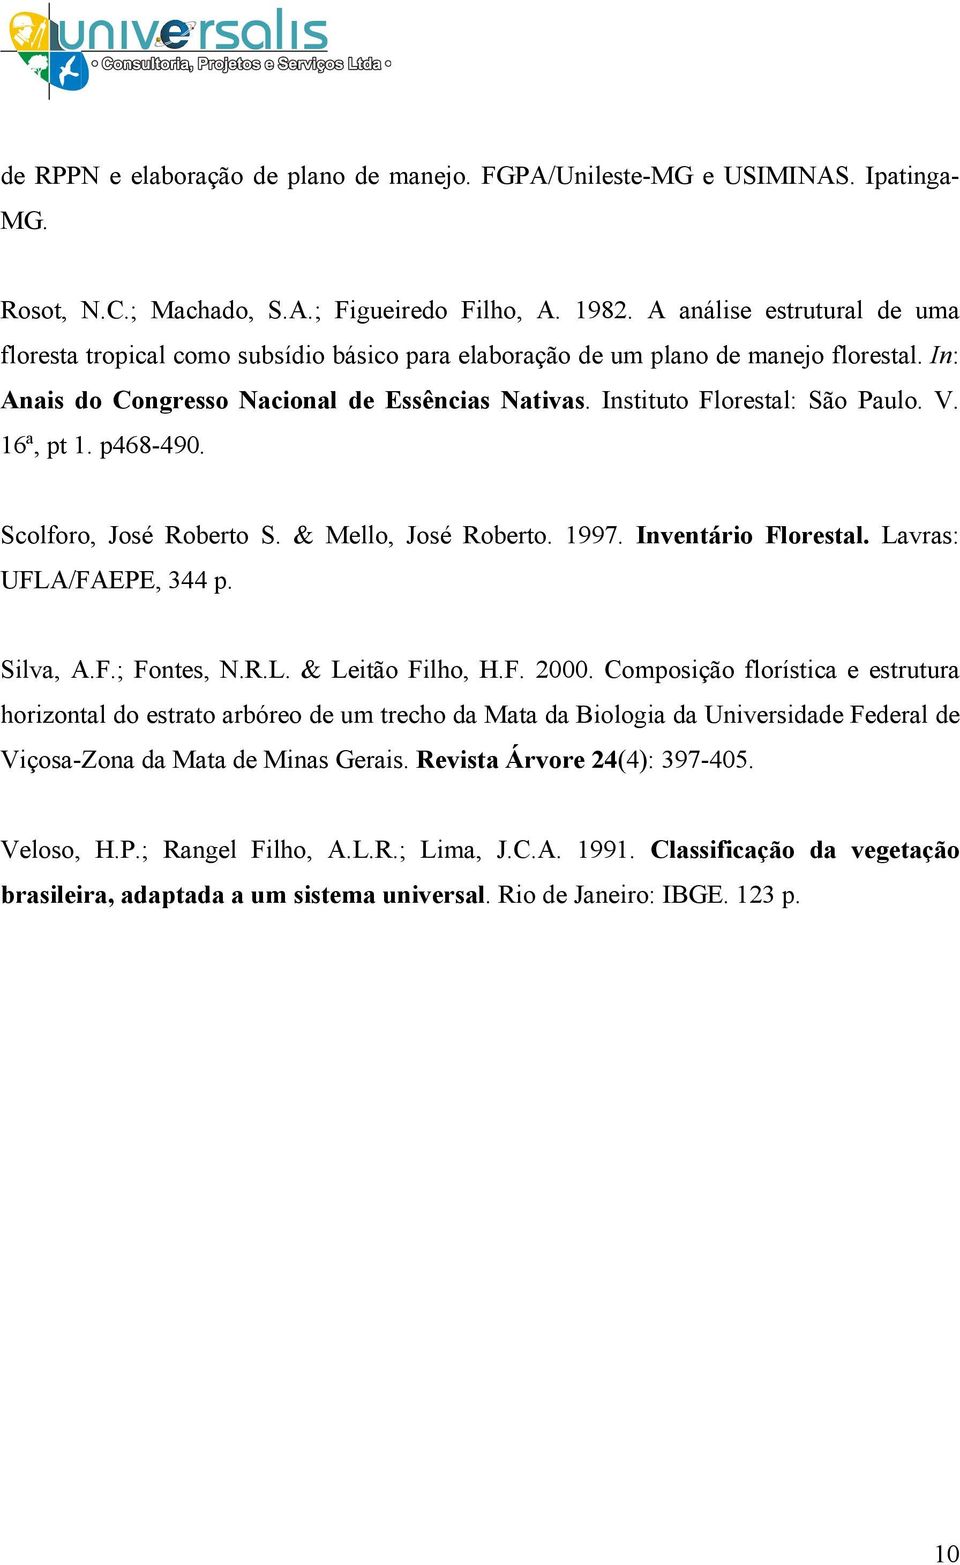 Instituto Florestal: São Paulo. V. 16ª, pt 1. p468-490. Scolforo, José Roberto S. & Mello, José Roberto. 1997. Inventário Florestal. Lavras: UFLA/FAEPE, 344 p. Silva, A.F.; Fontes, N.R.L. & Leitão Filho, H.